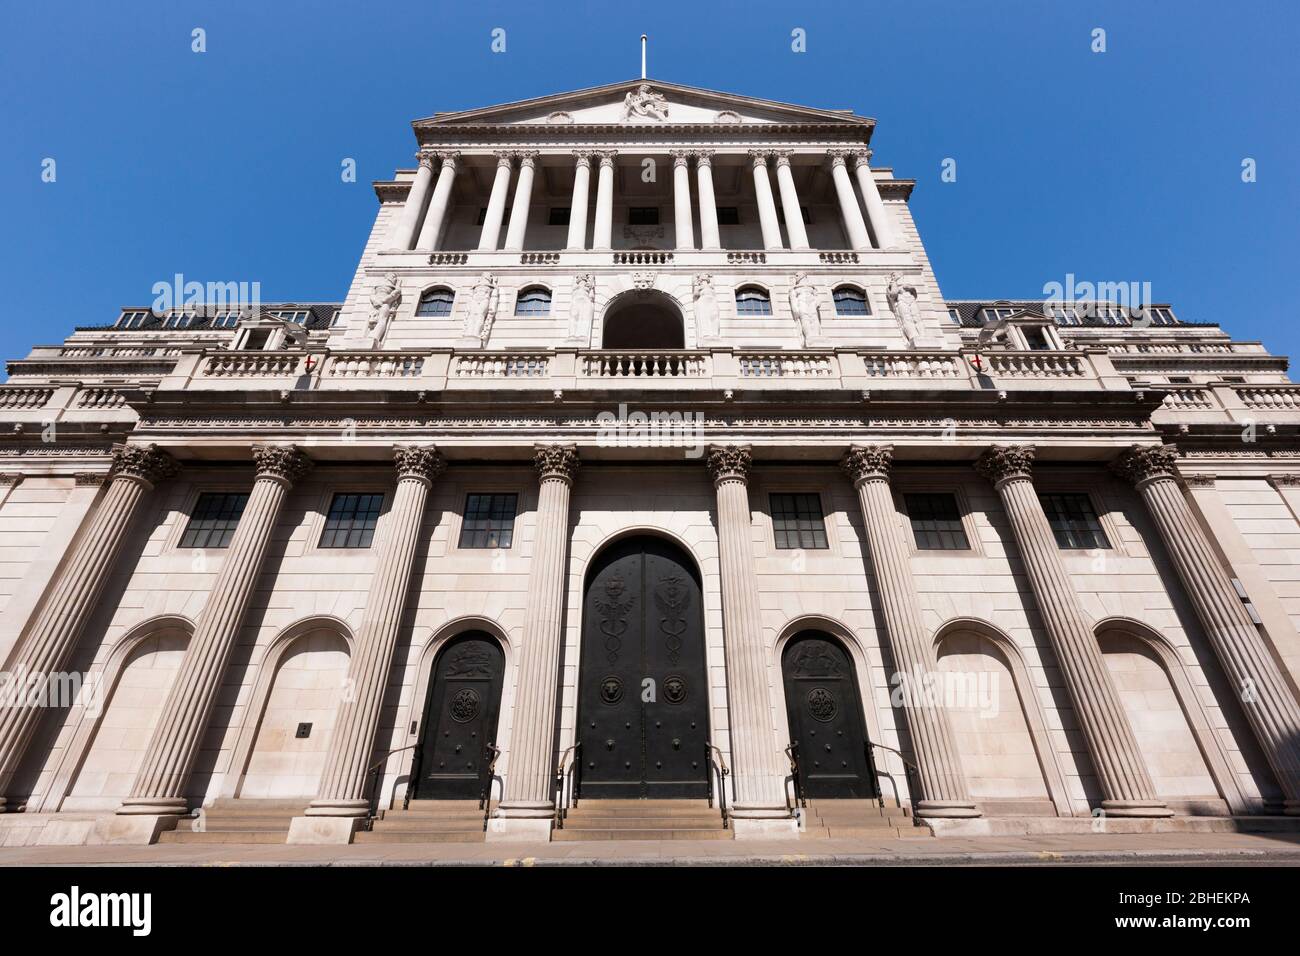 Facciata anteriore dell'edificio della Bank of England in Threadneedle St, Londra, EC2R 8AH. La banca controlla i tassi di interesse per il Regno Unito. (118) Foto Stock